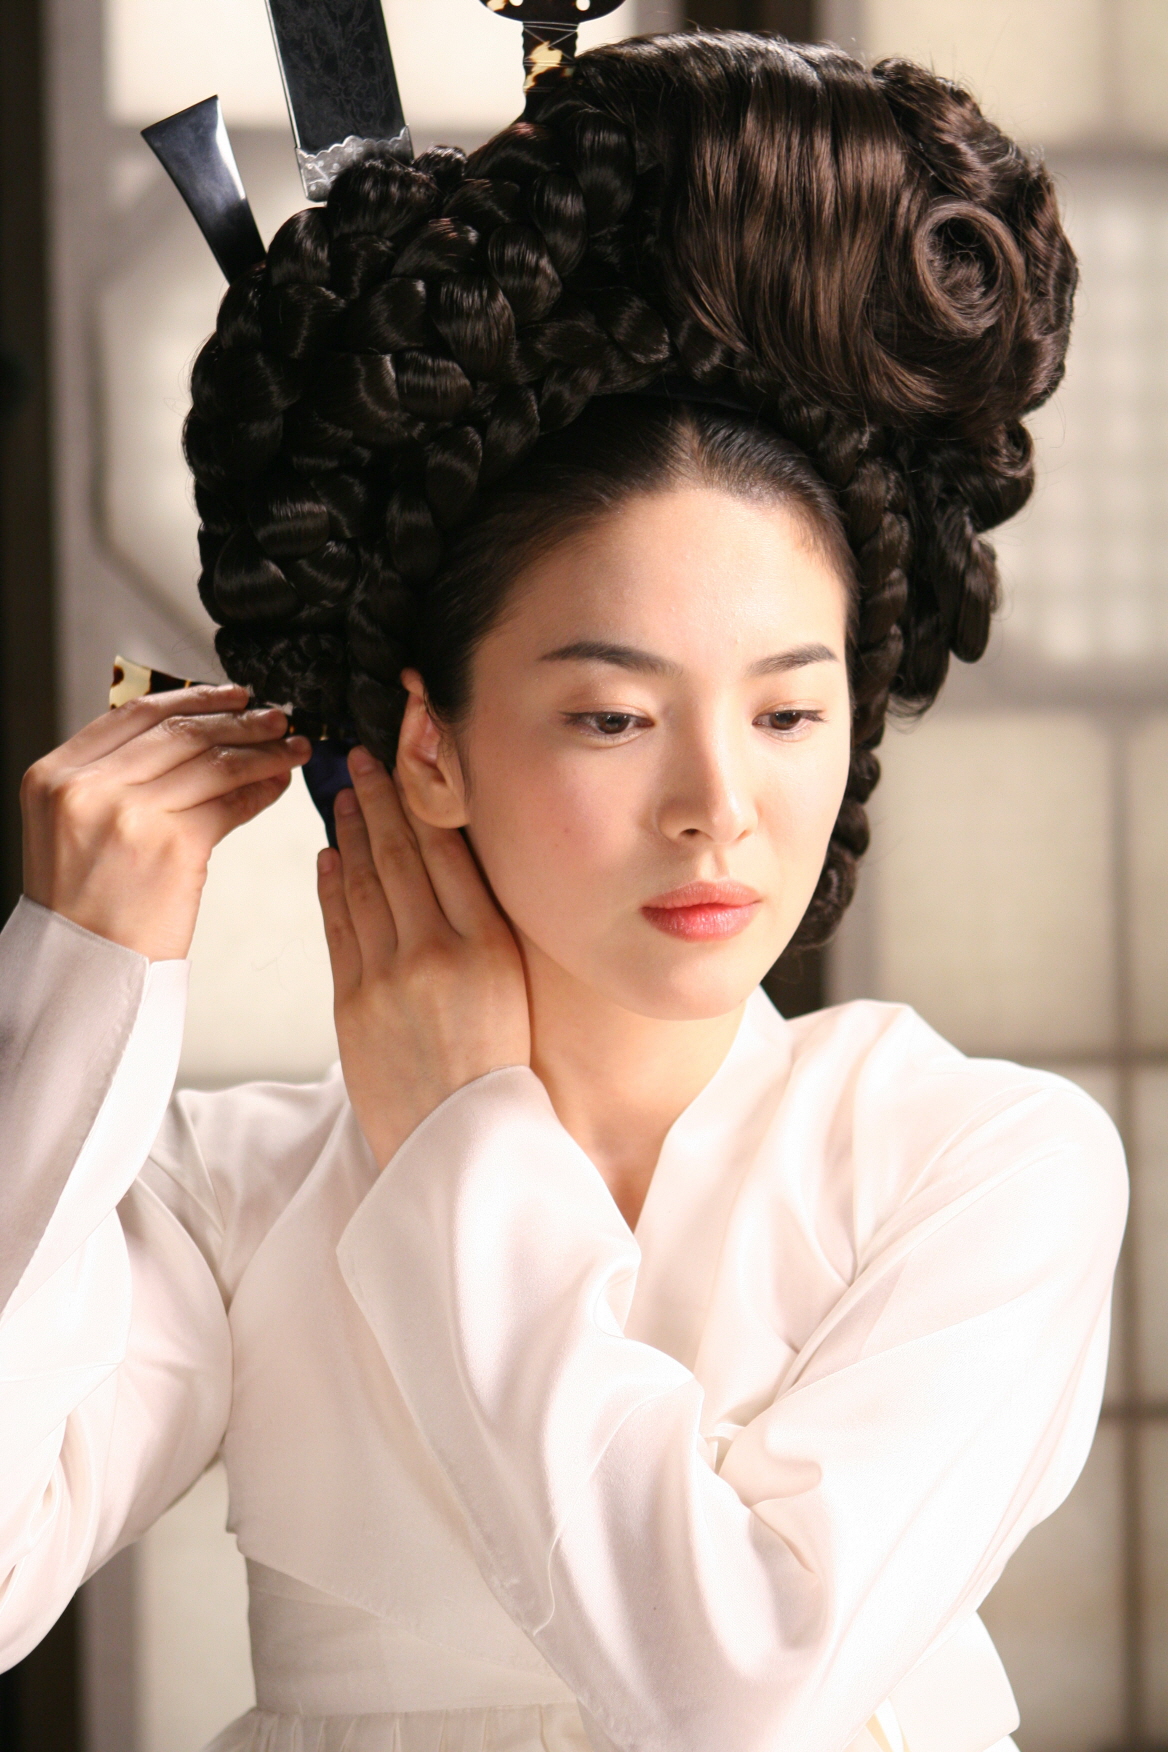 Xem xong 3 phim này hết dám nói Song Hye Kyo một màu: Làm kỹ nữ còn chưa sốc bằng loạt cảnh nóng bị cấm chiếu - Ảnh 3.